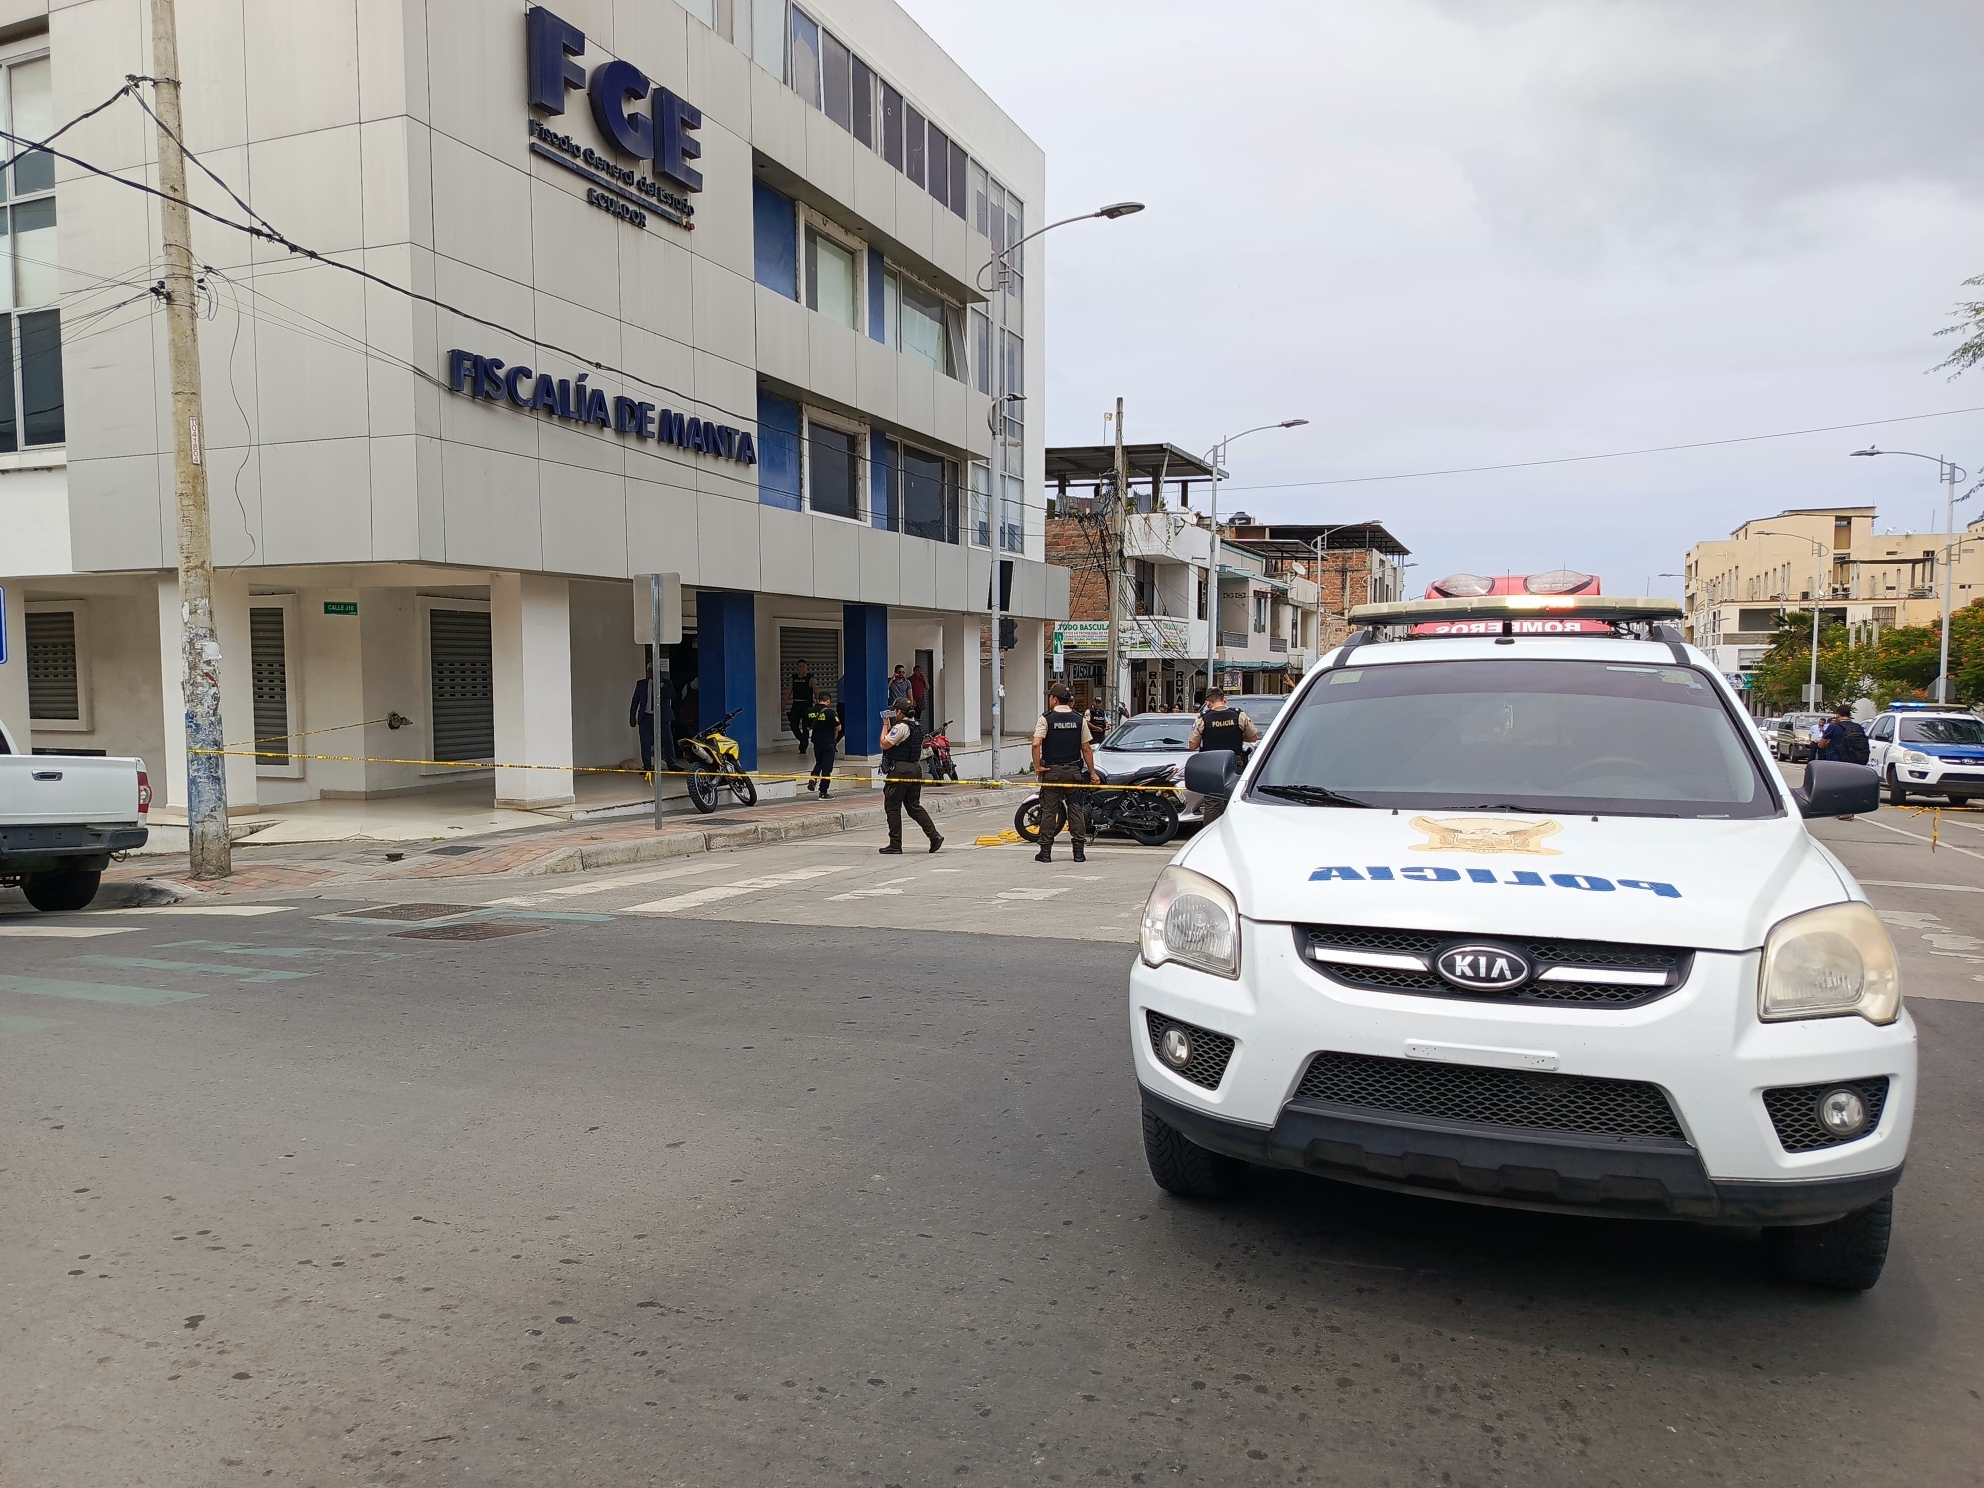 El ataque ocurrido contra el edificio de la Fiscalía en Manta es más que una advertencia de la delincuencia.